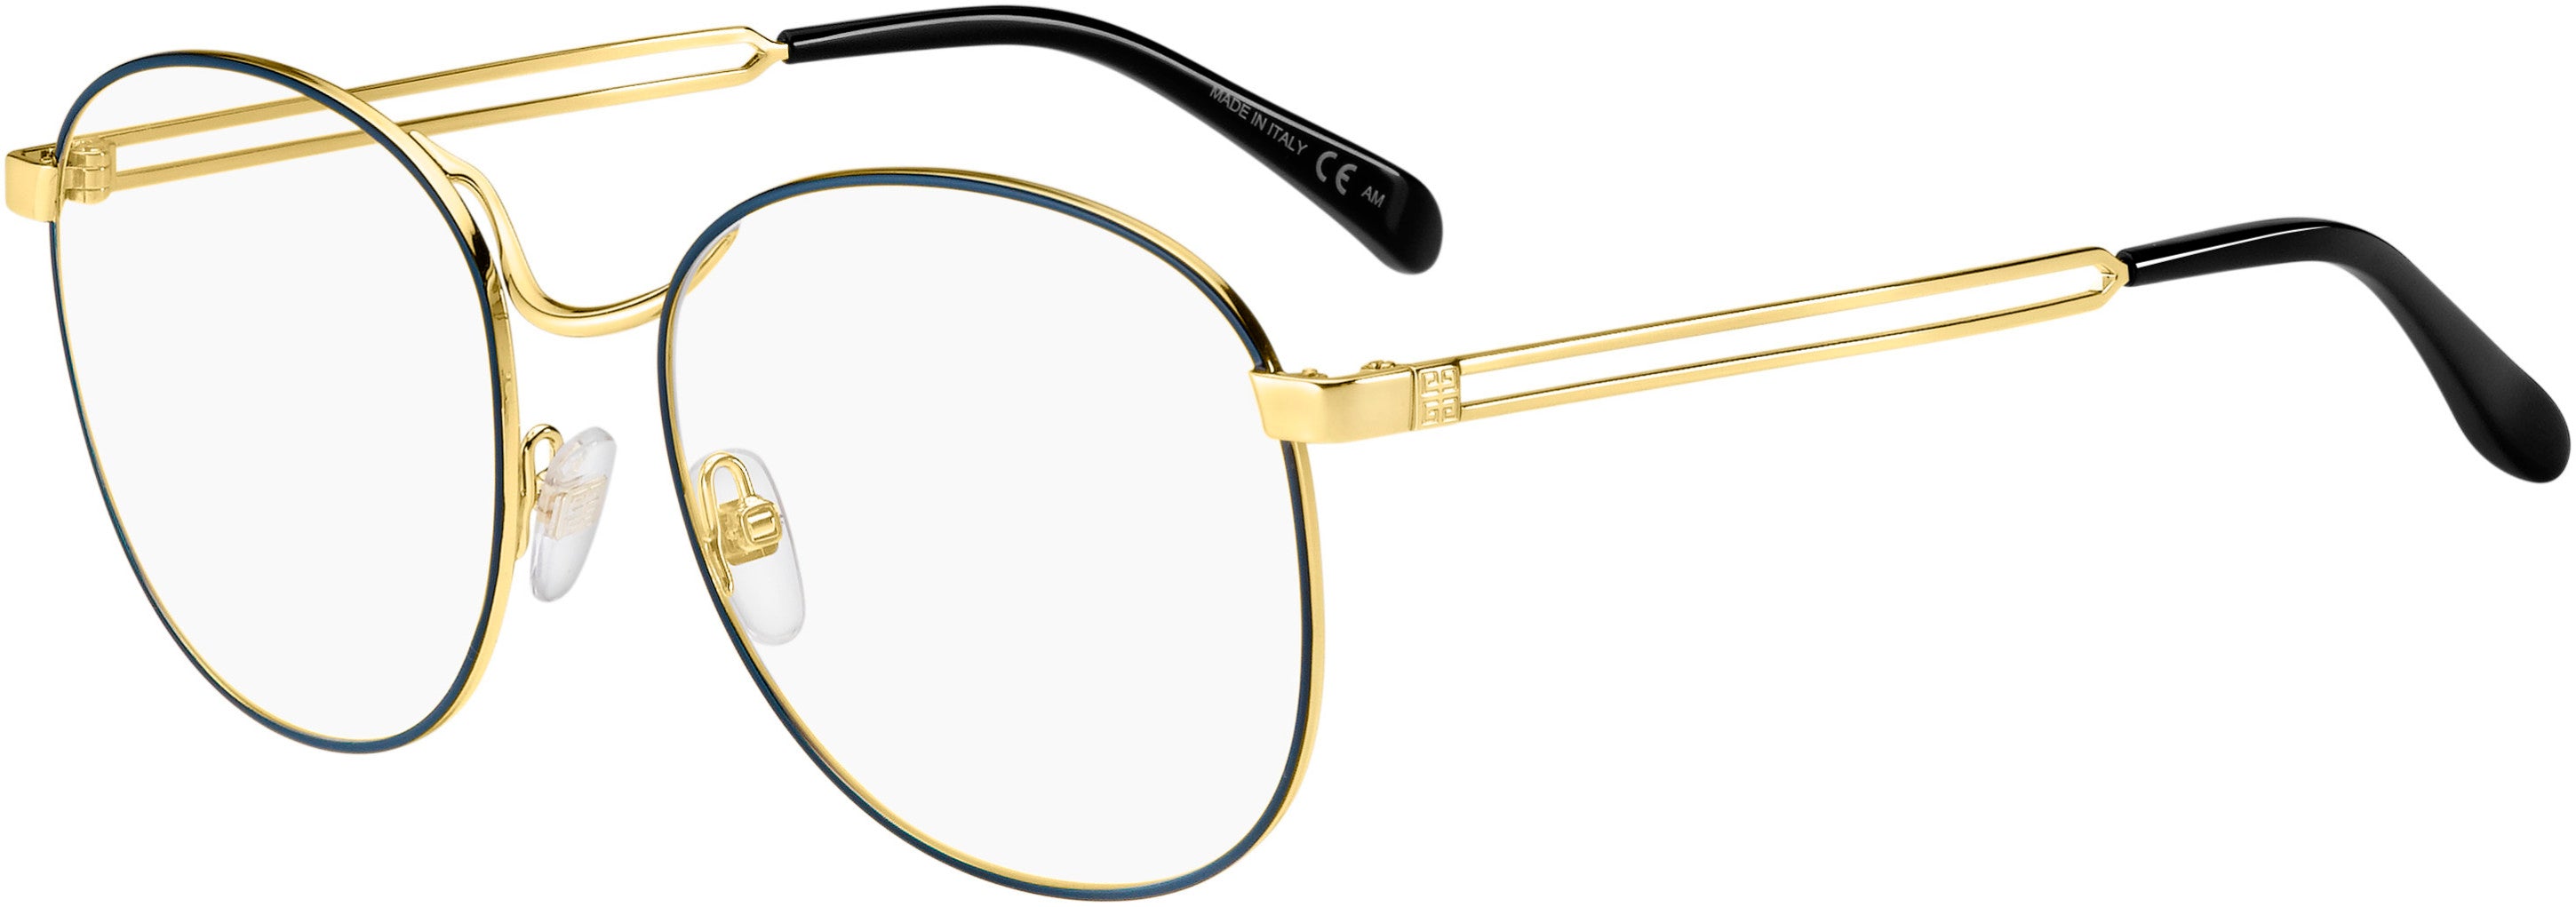  Givenchy 0107 Oval Modified Eyeglasses 0LKS-0LKS  Gold Blue (00 Demo Lens)